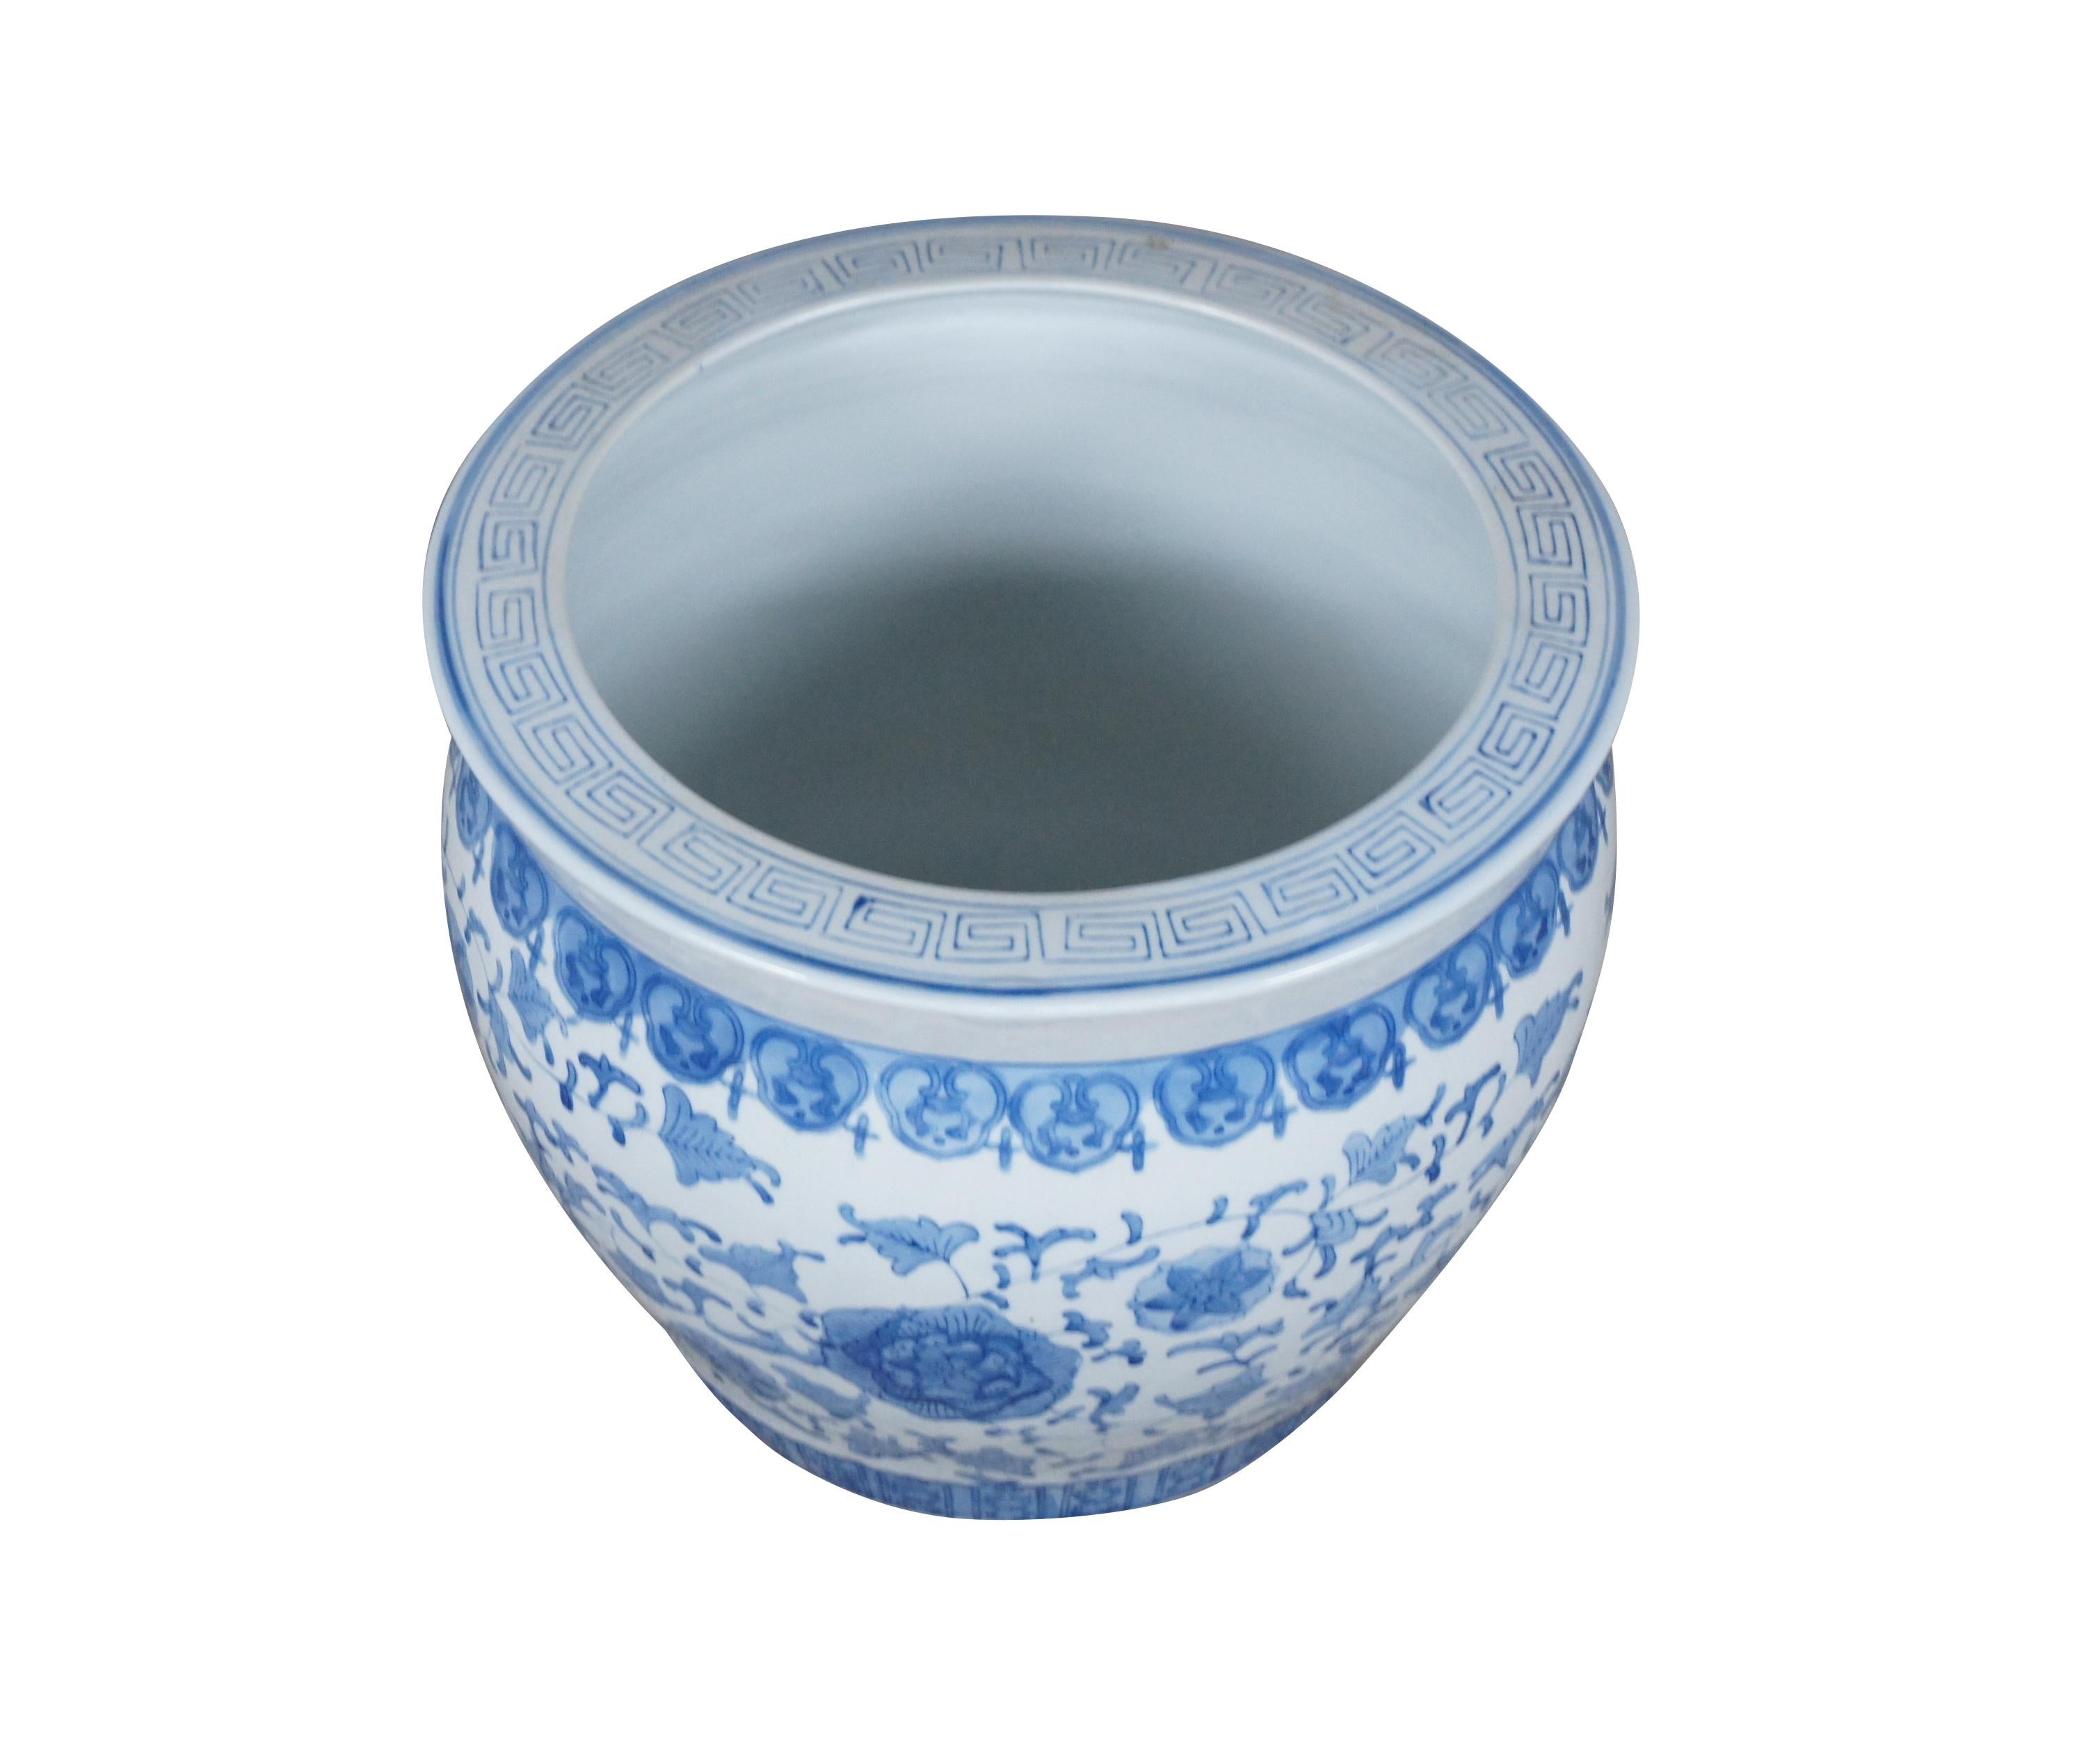 Vintage Fish Bowl Keramik Pflanzgefäß mit handgemalten Blumenmotiven im Chinoiserie-Stil und Verzierungen in Blau auf weißem Hintergrund. Maße: 17